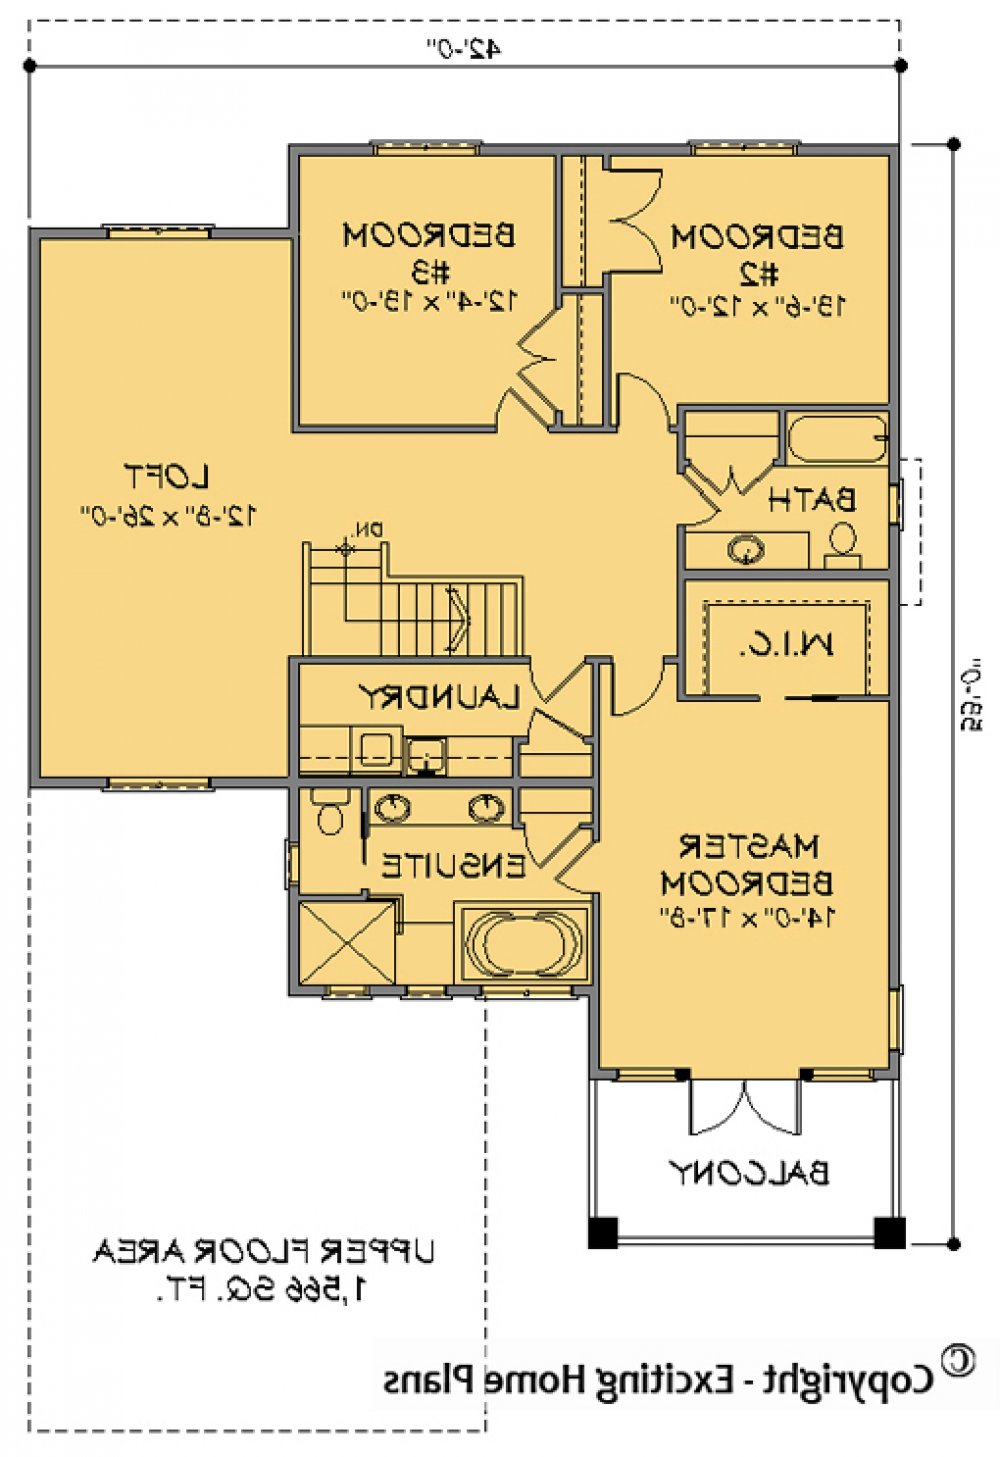 House Plan E1151-10 Upper Floor Plan